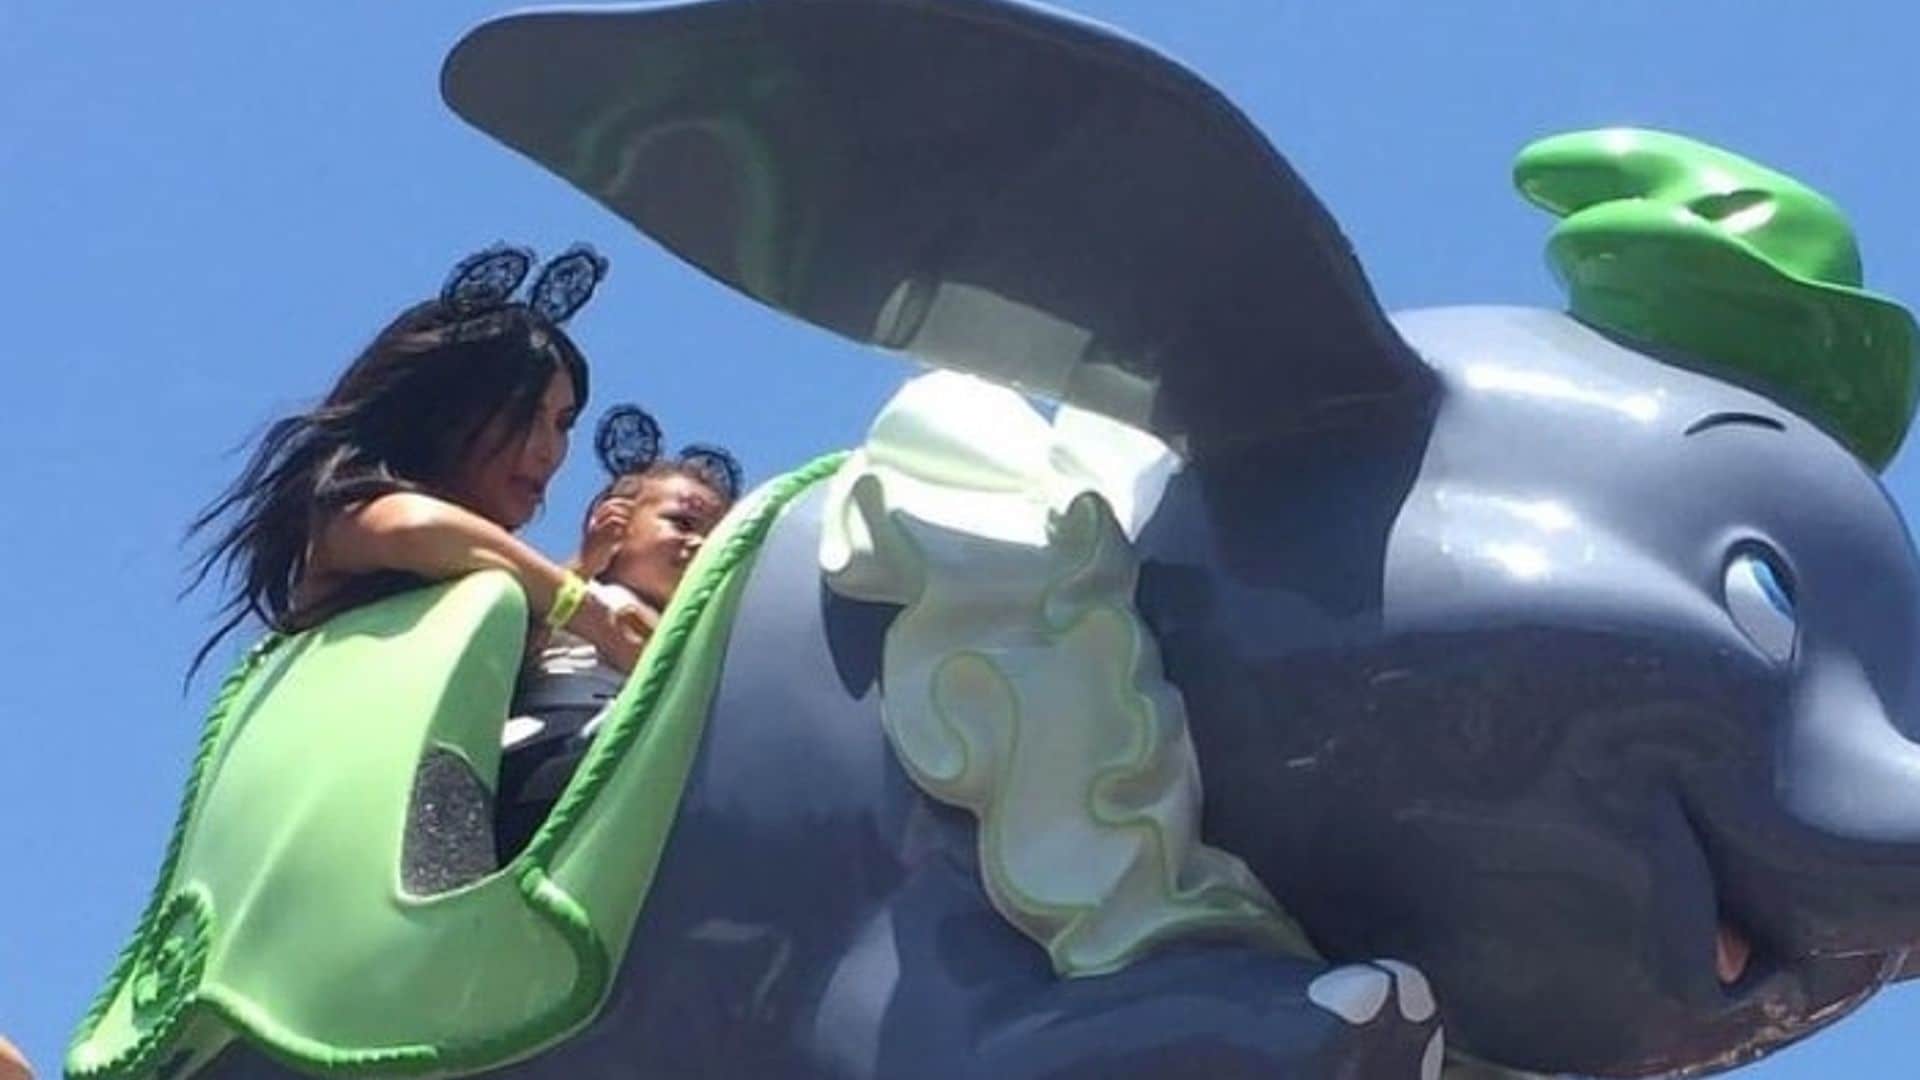 Kim Kardashian celebrates North West's birthday at Disneyland